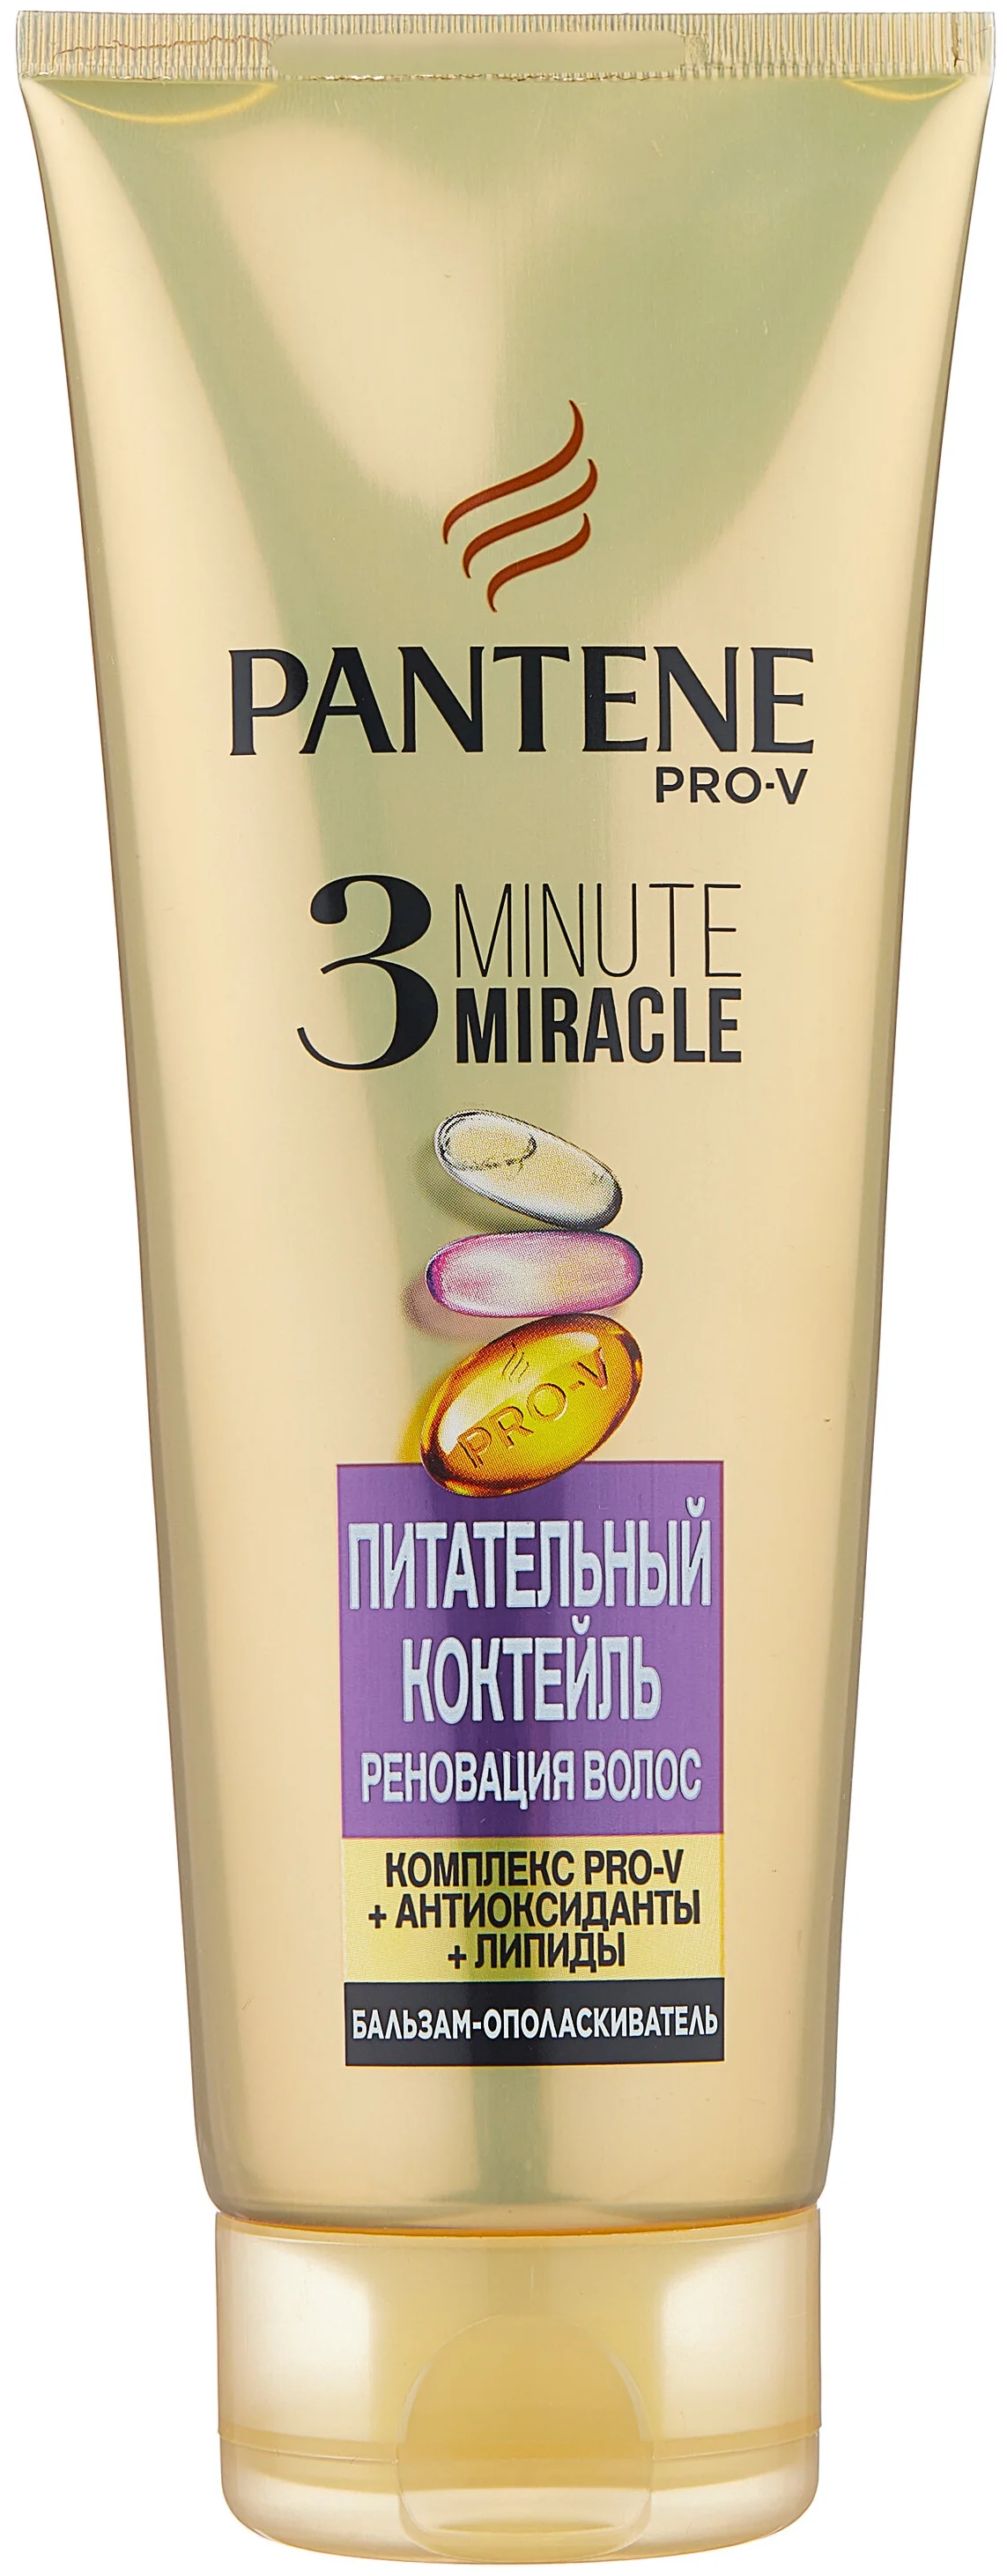 Pantene 3 Minute Miracle "Питательный коктейль Реновация волос" - для ежедневного применения